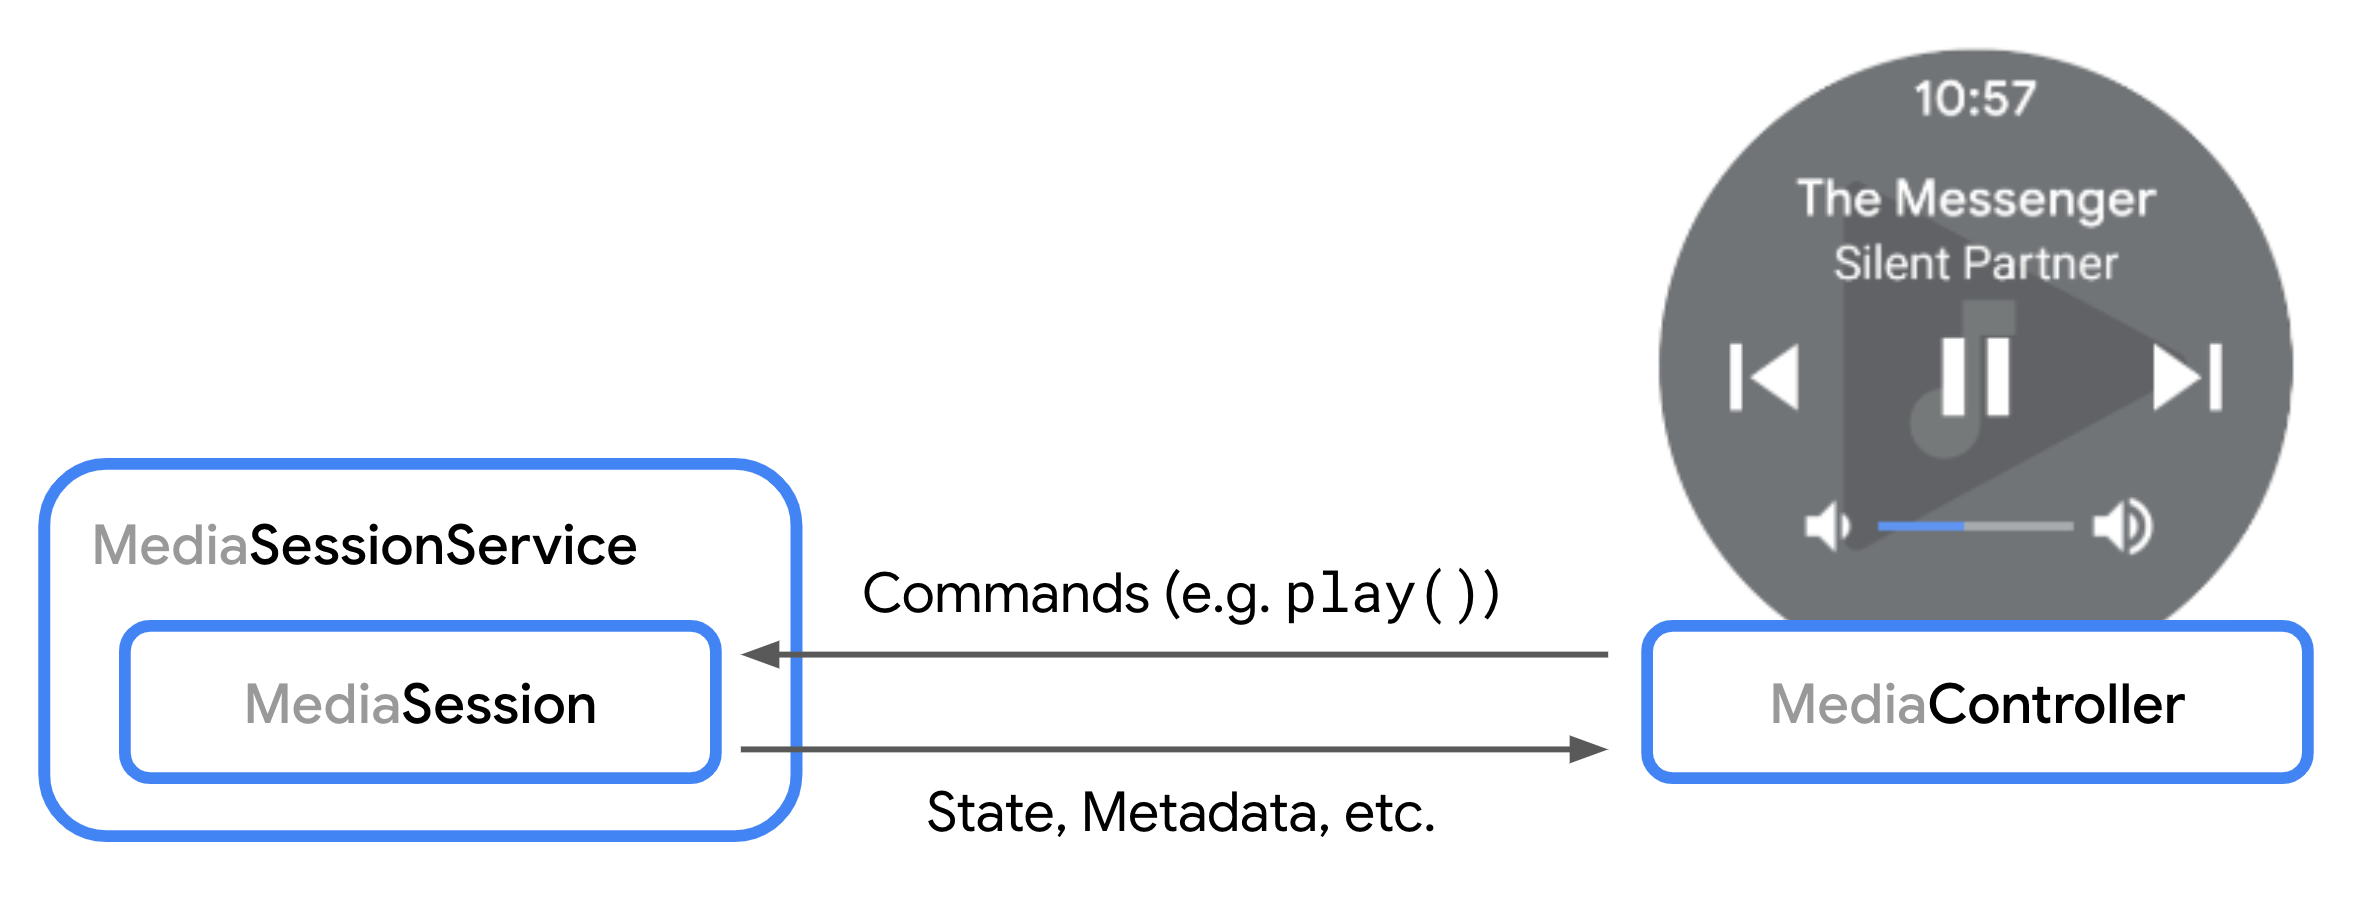 Un diagrama que muestra la interacción entre un MediaSession y un MediaController.